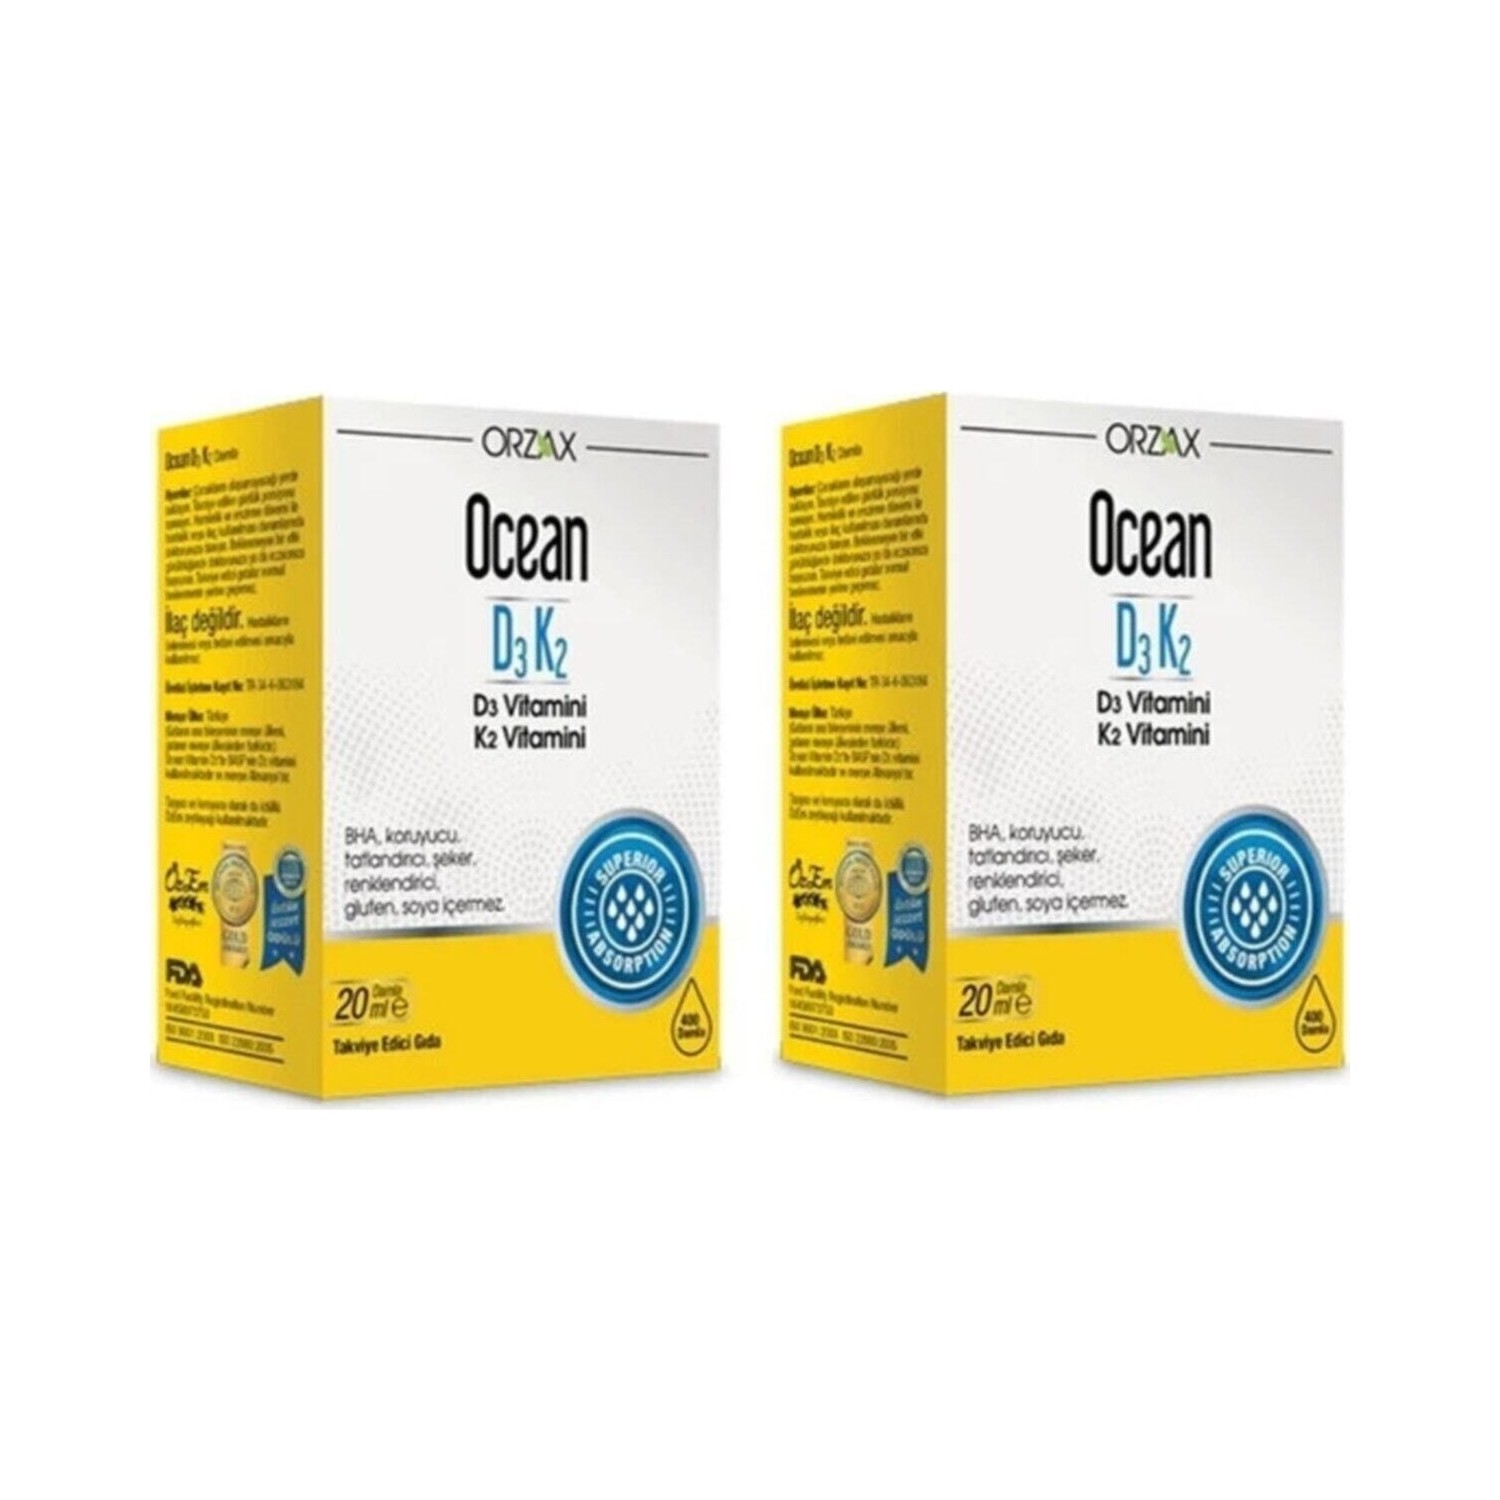 Витаминные капли D3 / K2 Orzax, 2 флакона по 20 мл витаминные капли d3 k2 ocean 2 флакона по 20 мл